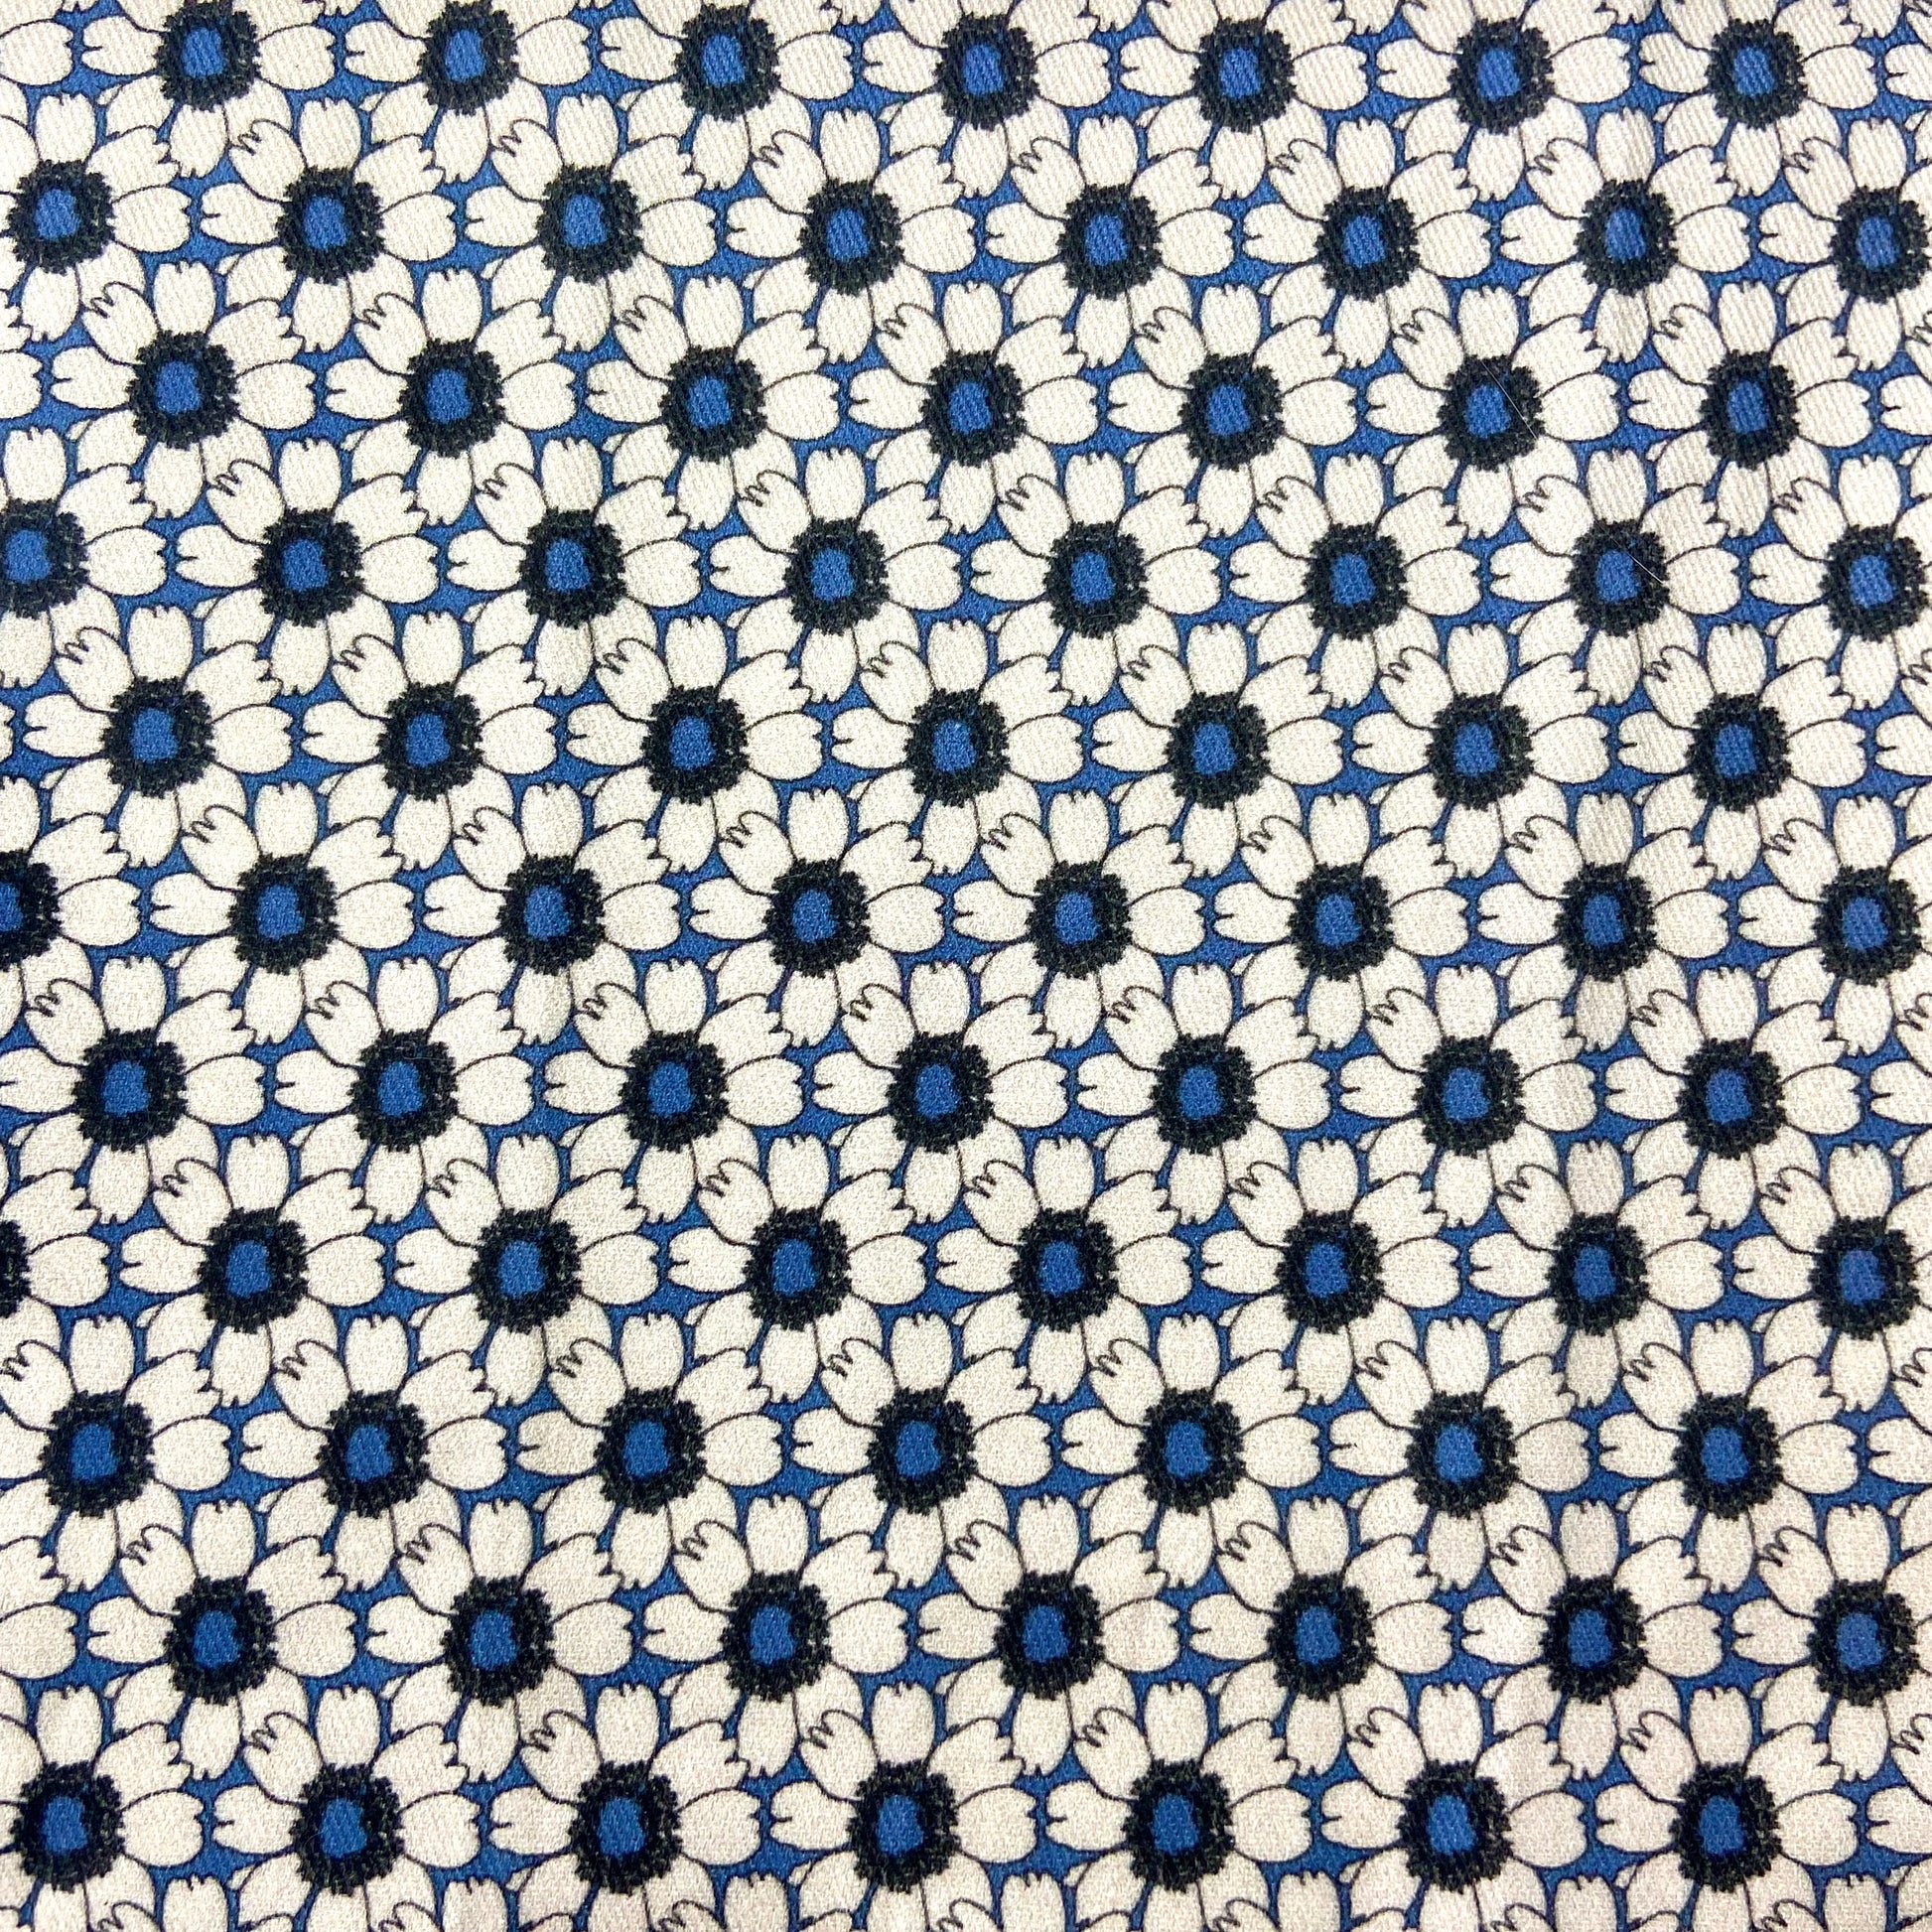 Sergé de coton imprimé à motif fleuri fleurs blanches écru sur fond bleu asters marguerites dahlias bleu roi romantique régulier élégant 